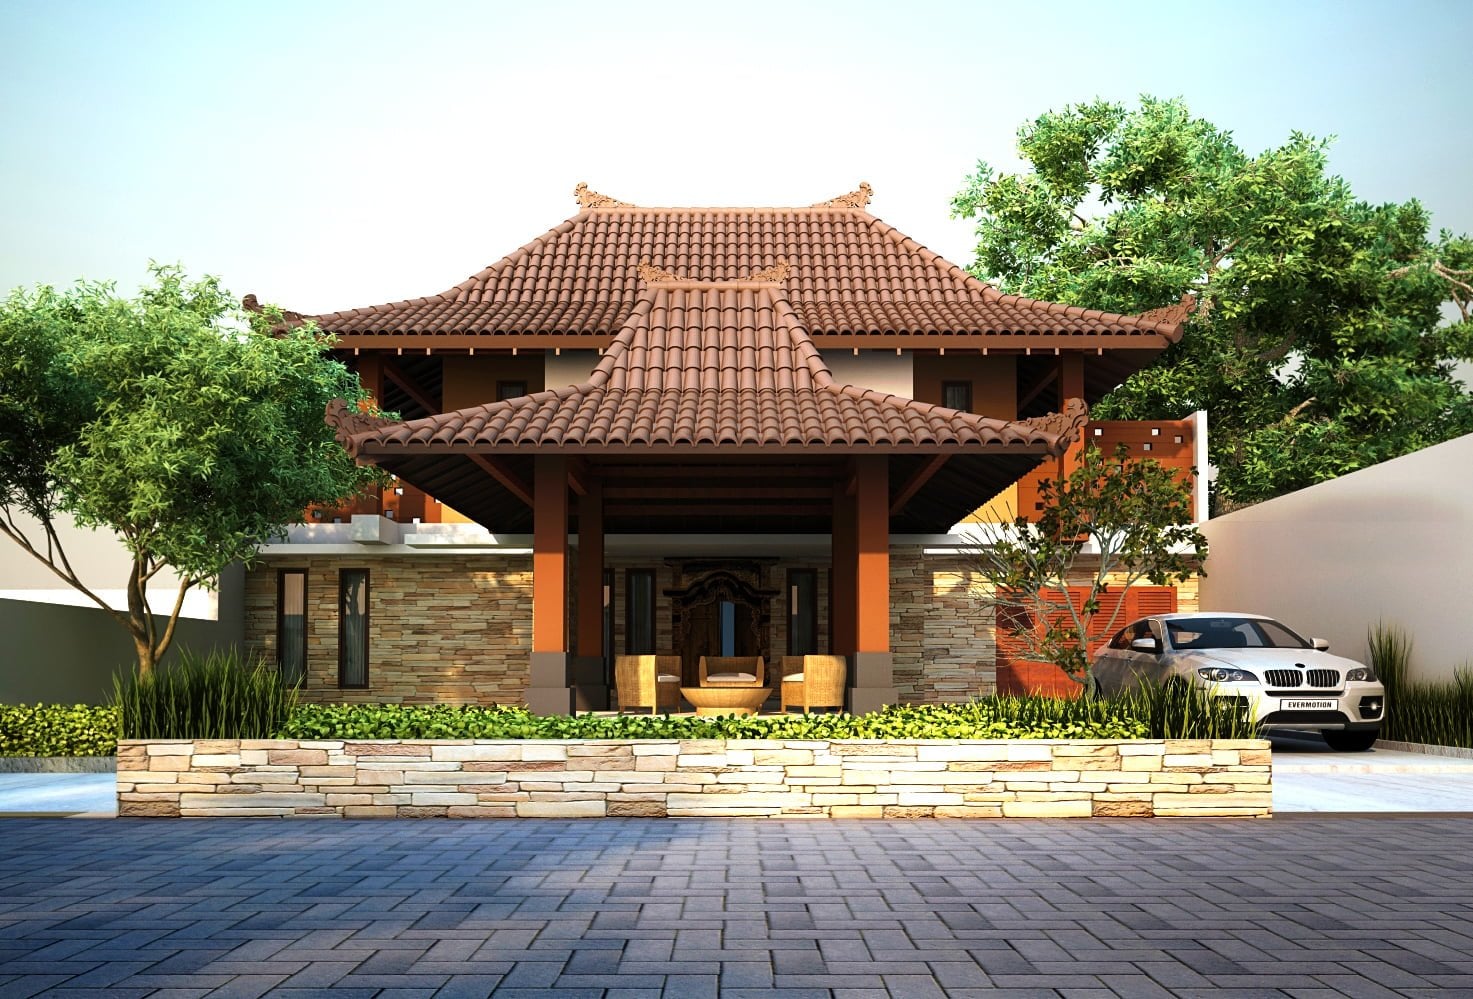 Minimalis Desain Rumah Adat Jawa Tengah Modern 94 Renovasi Desain Interior Untuk Renovasi Rumah dengan Desain Rumah Adat Jawa Tengah Modern